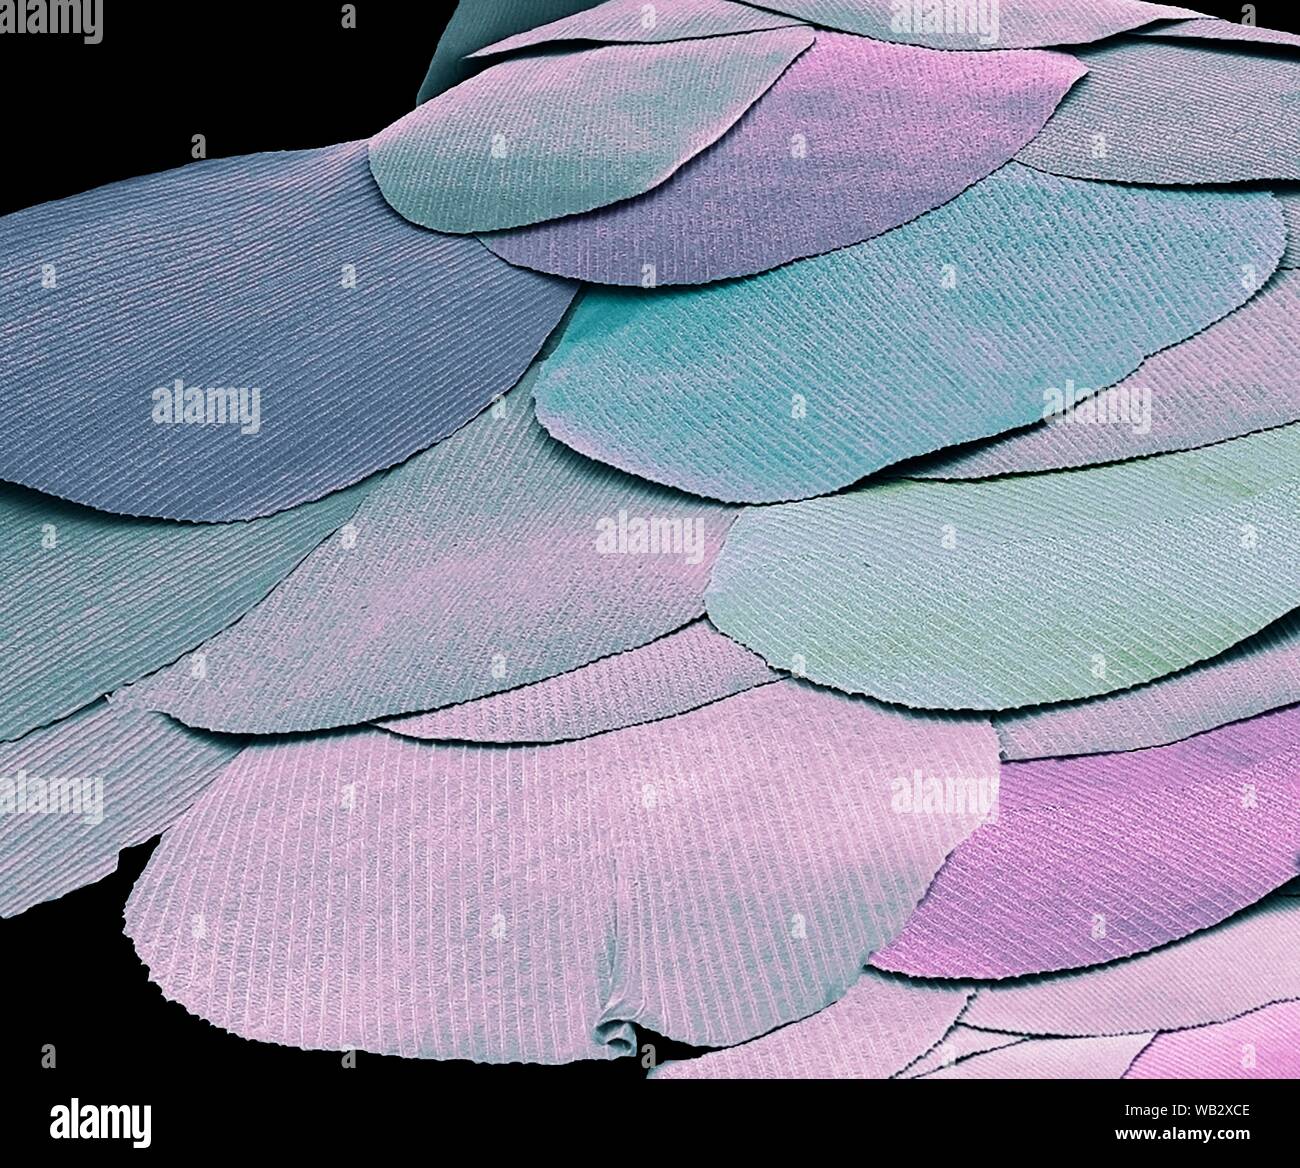 Silberfische Skalen (Lepisma saccharina). Farbige Scanning Electron Micrograph (SEM) der Skalen von einem silberfische. Die Silverfish ist eine primitive Insekt, das seit Millionen von Jahren unverändert geblieben ist, und ist ein lebendes Fossil betrachtet. Die silberfische wird so genannt, weil er in den kleinen glänzenden Schuppen bedeckt ist. Es ist ein gemeinsamer Haushalt Schädlingsbekämpfung, Fütterung von Stärken in den Bereichen Lebensmittel, Bücher und Kleidung. Vergrößerung x 300 Wenn gedruckt 10cm breit Stockfoto